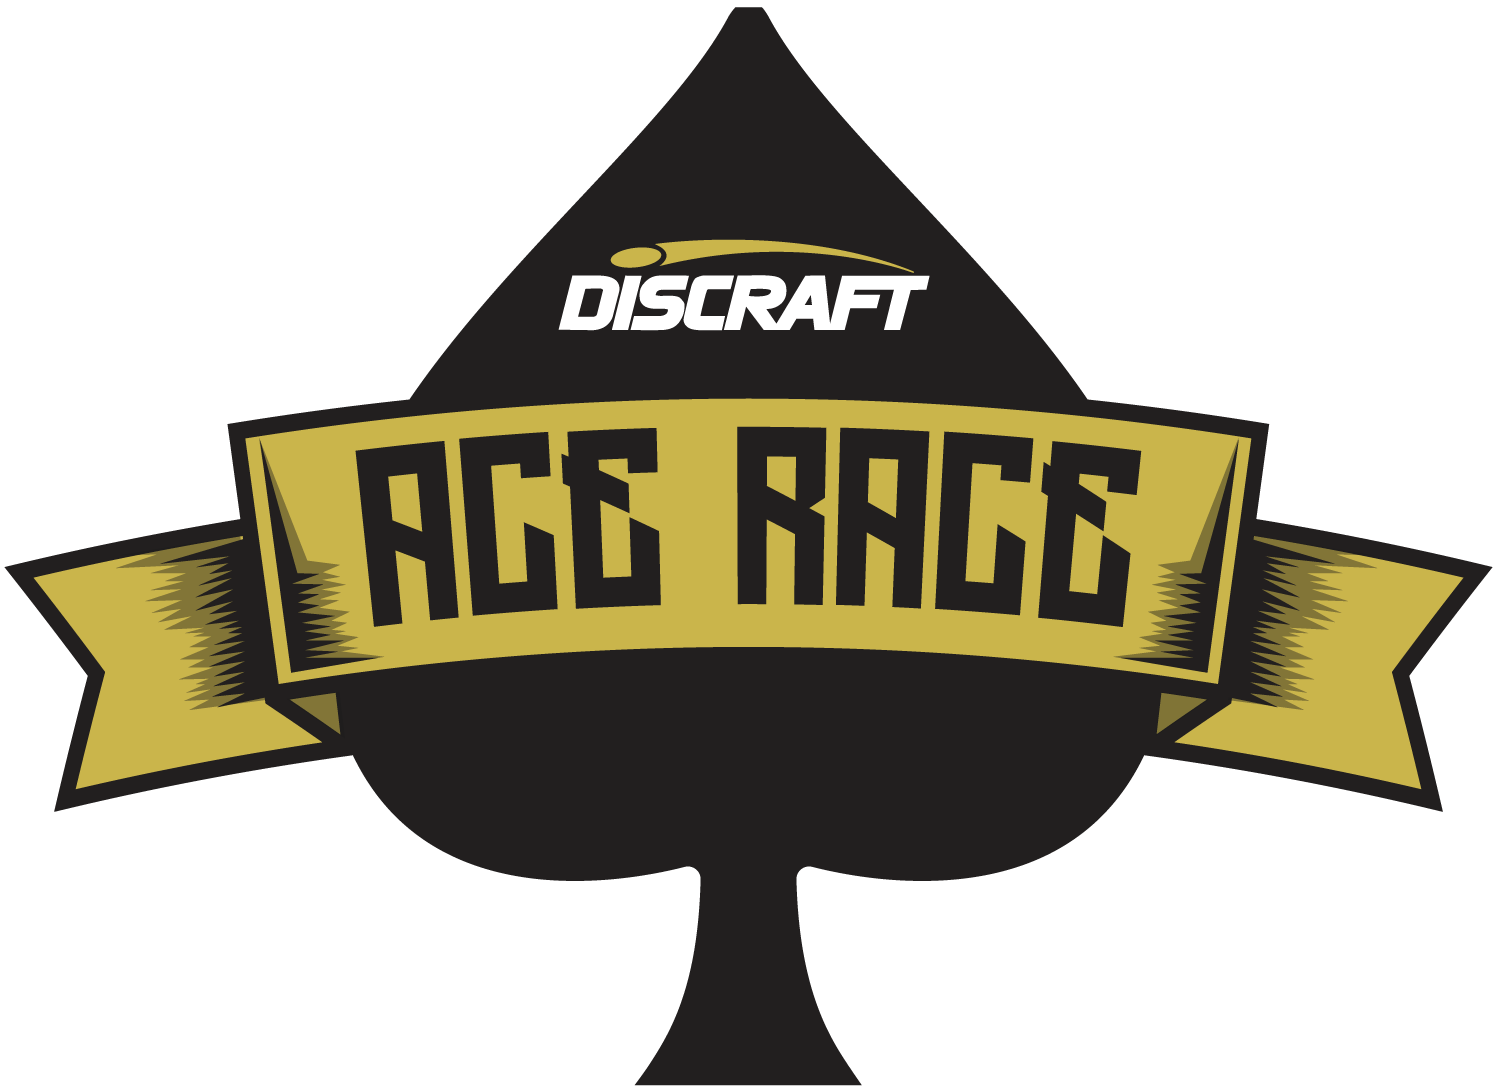 Discraft Event 2019 Discraft Ace Race 10/26/19